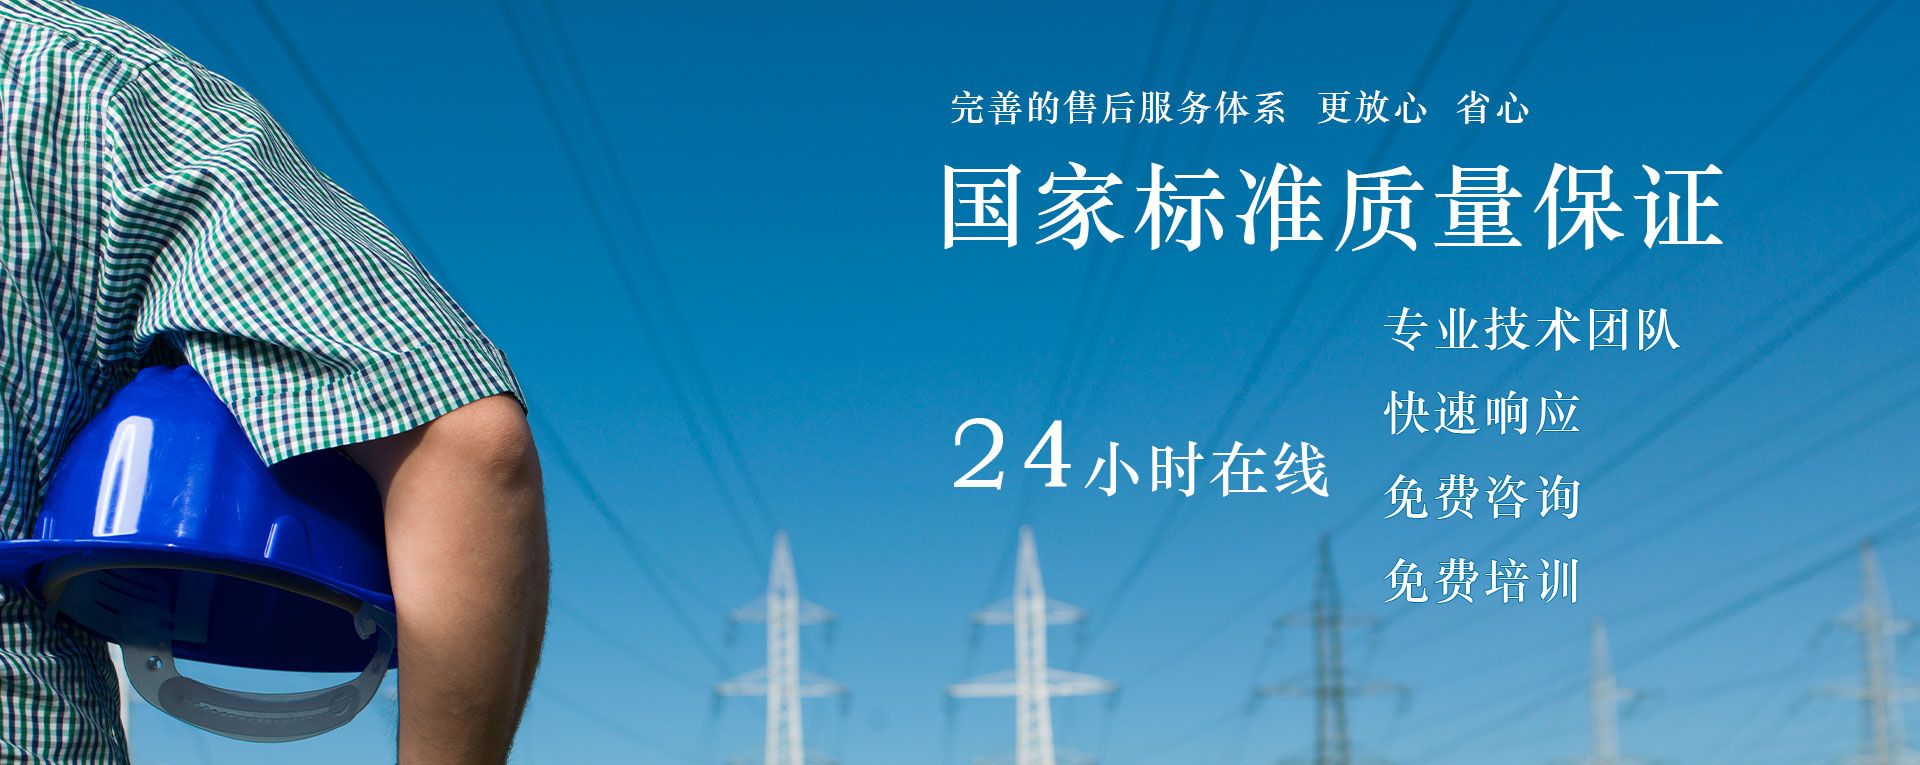 武漢凱迪正大電氣產品中心